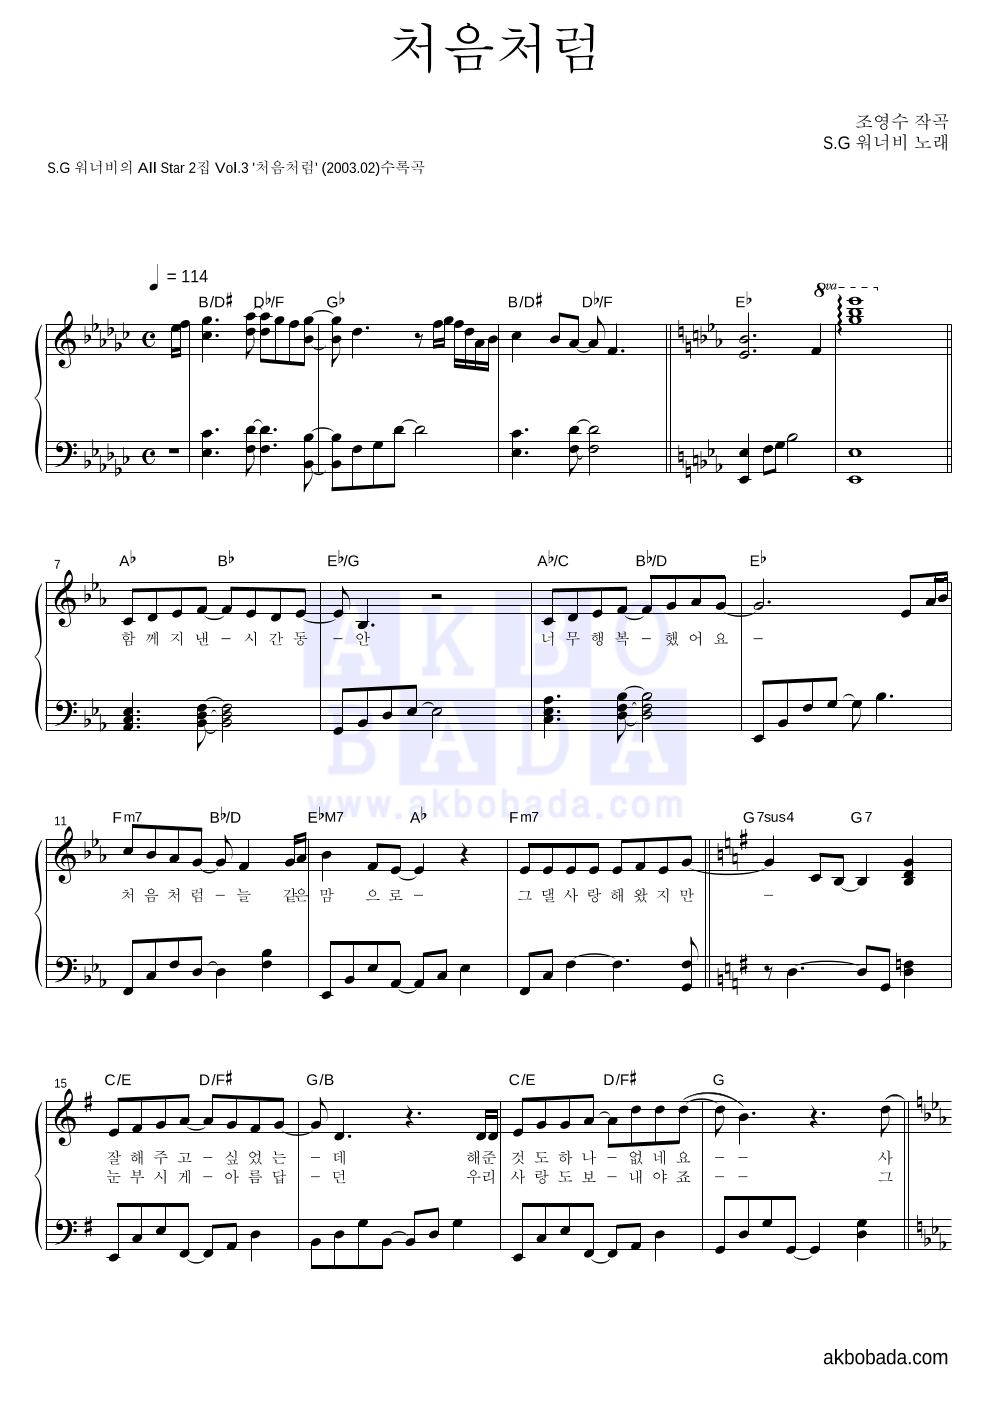 SG워너비 - 처음처럼 피아노 2단 악보 